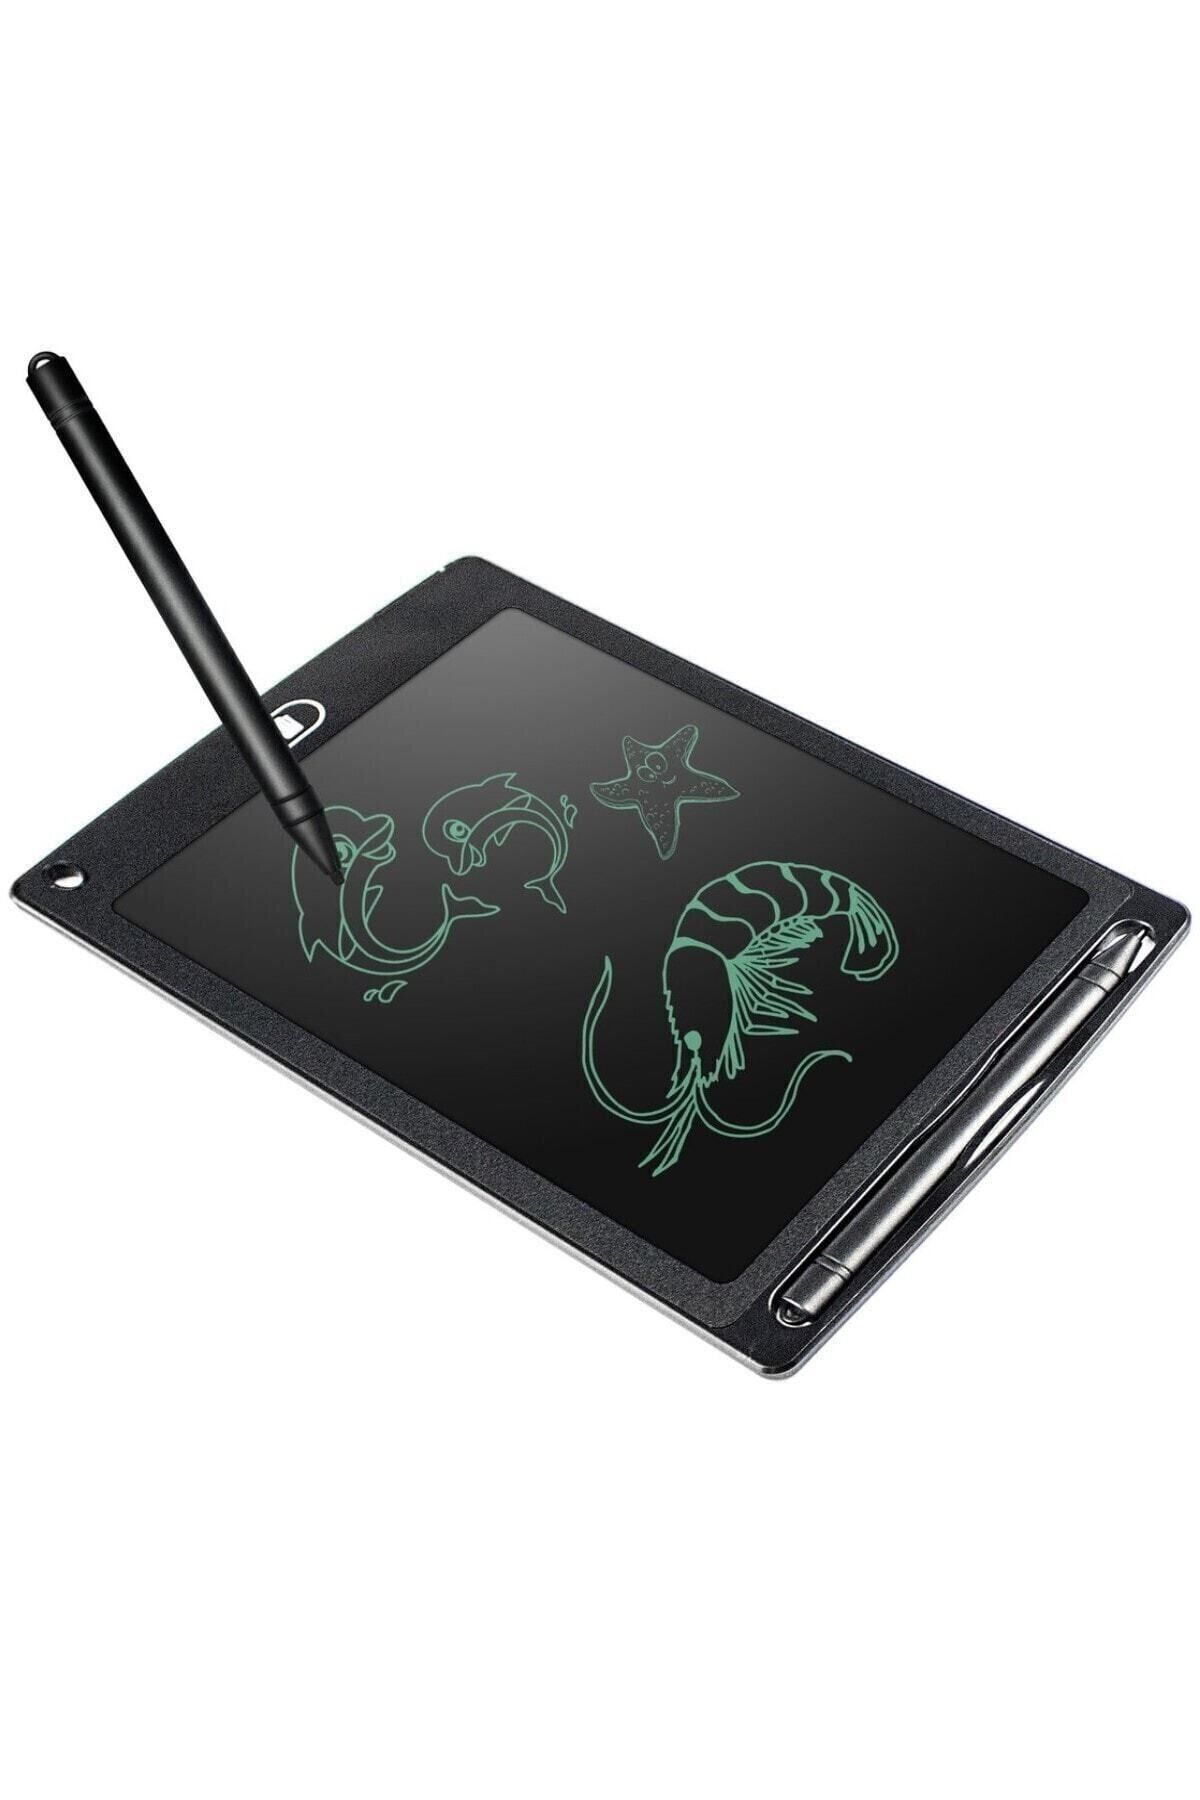 SARFEX Writing Tablet Lcd 8.5inç Dijital Kalemli Çizim Yazı Tahtası Grafik Not Yazma Eğitim Tableti Siyah